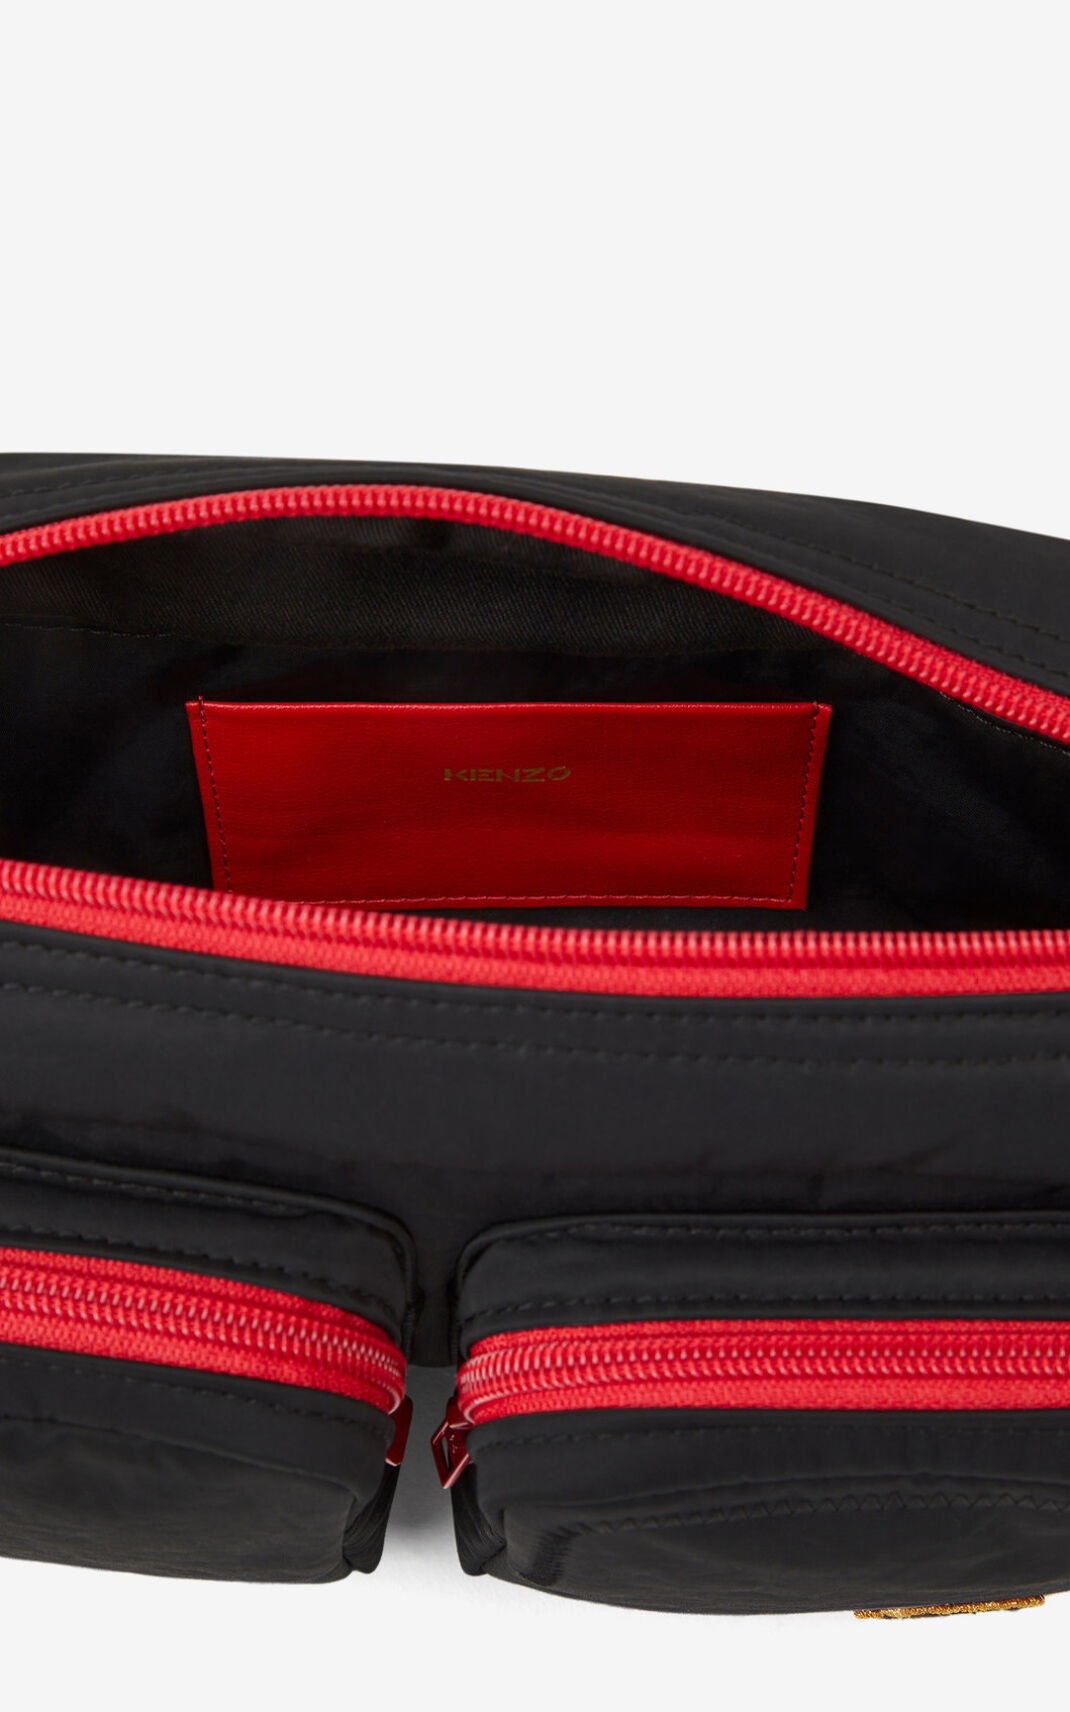 Tiger Crest belt bag - 4